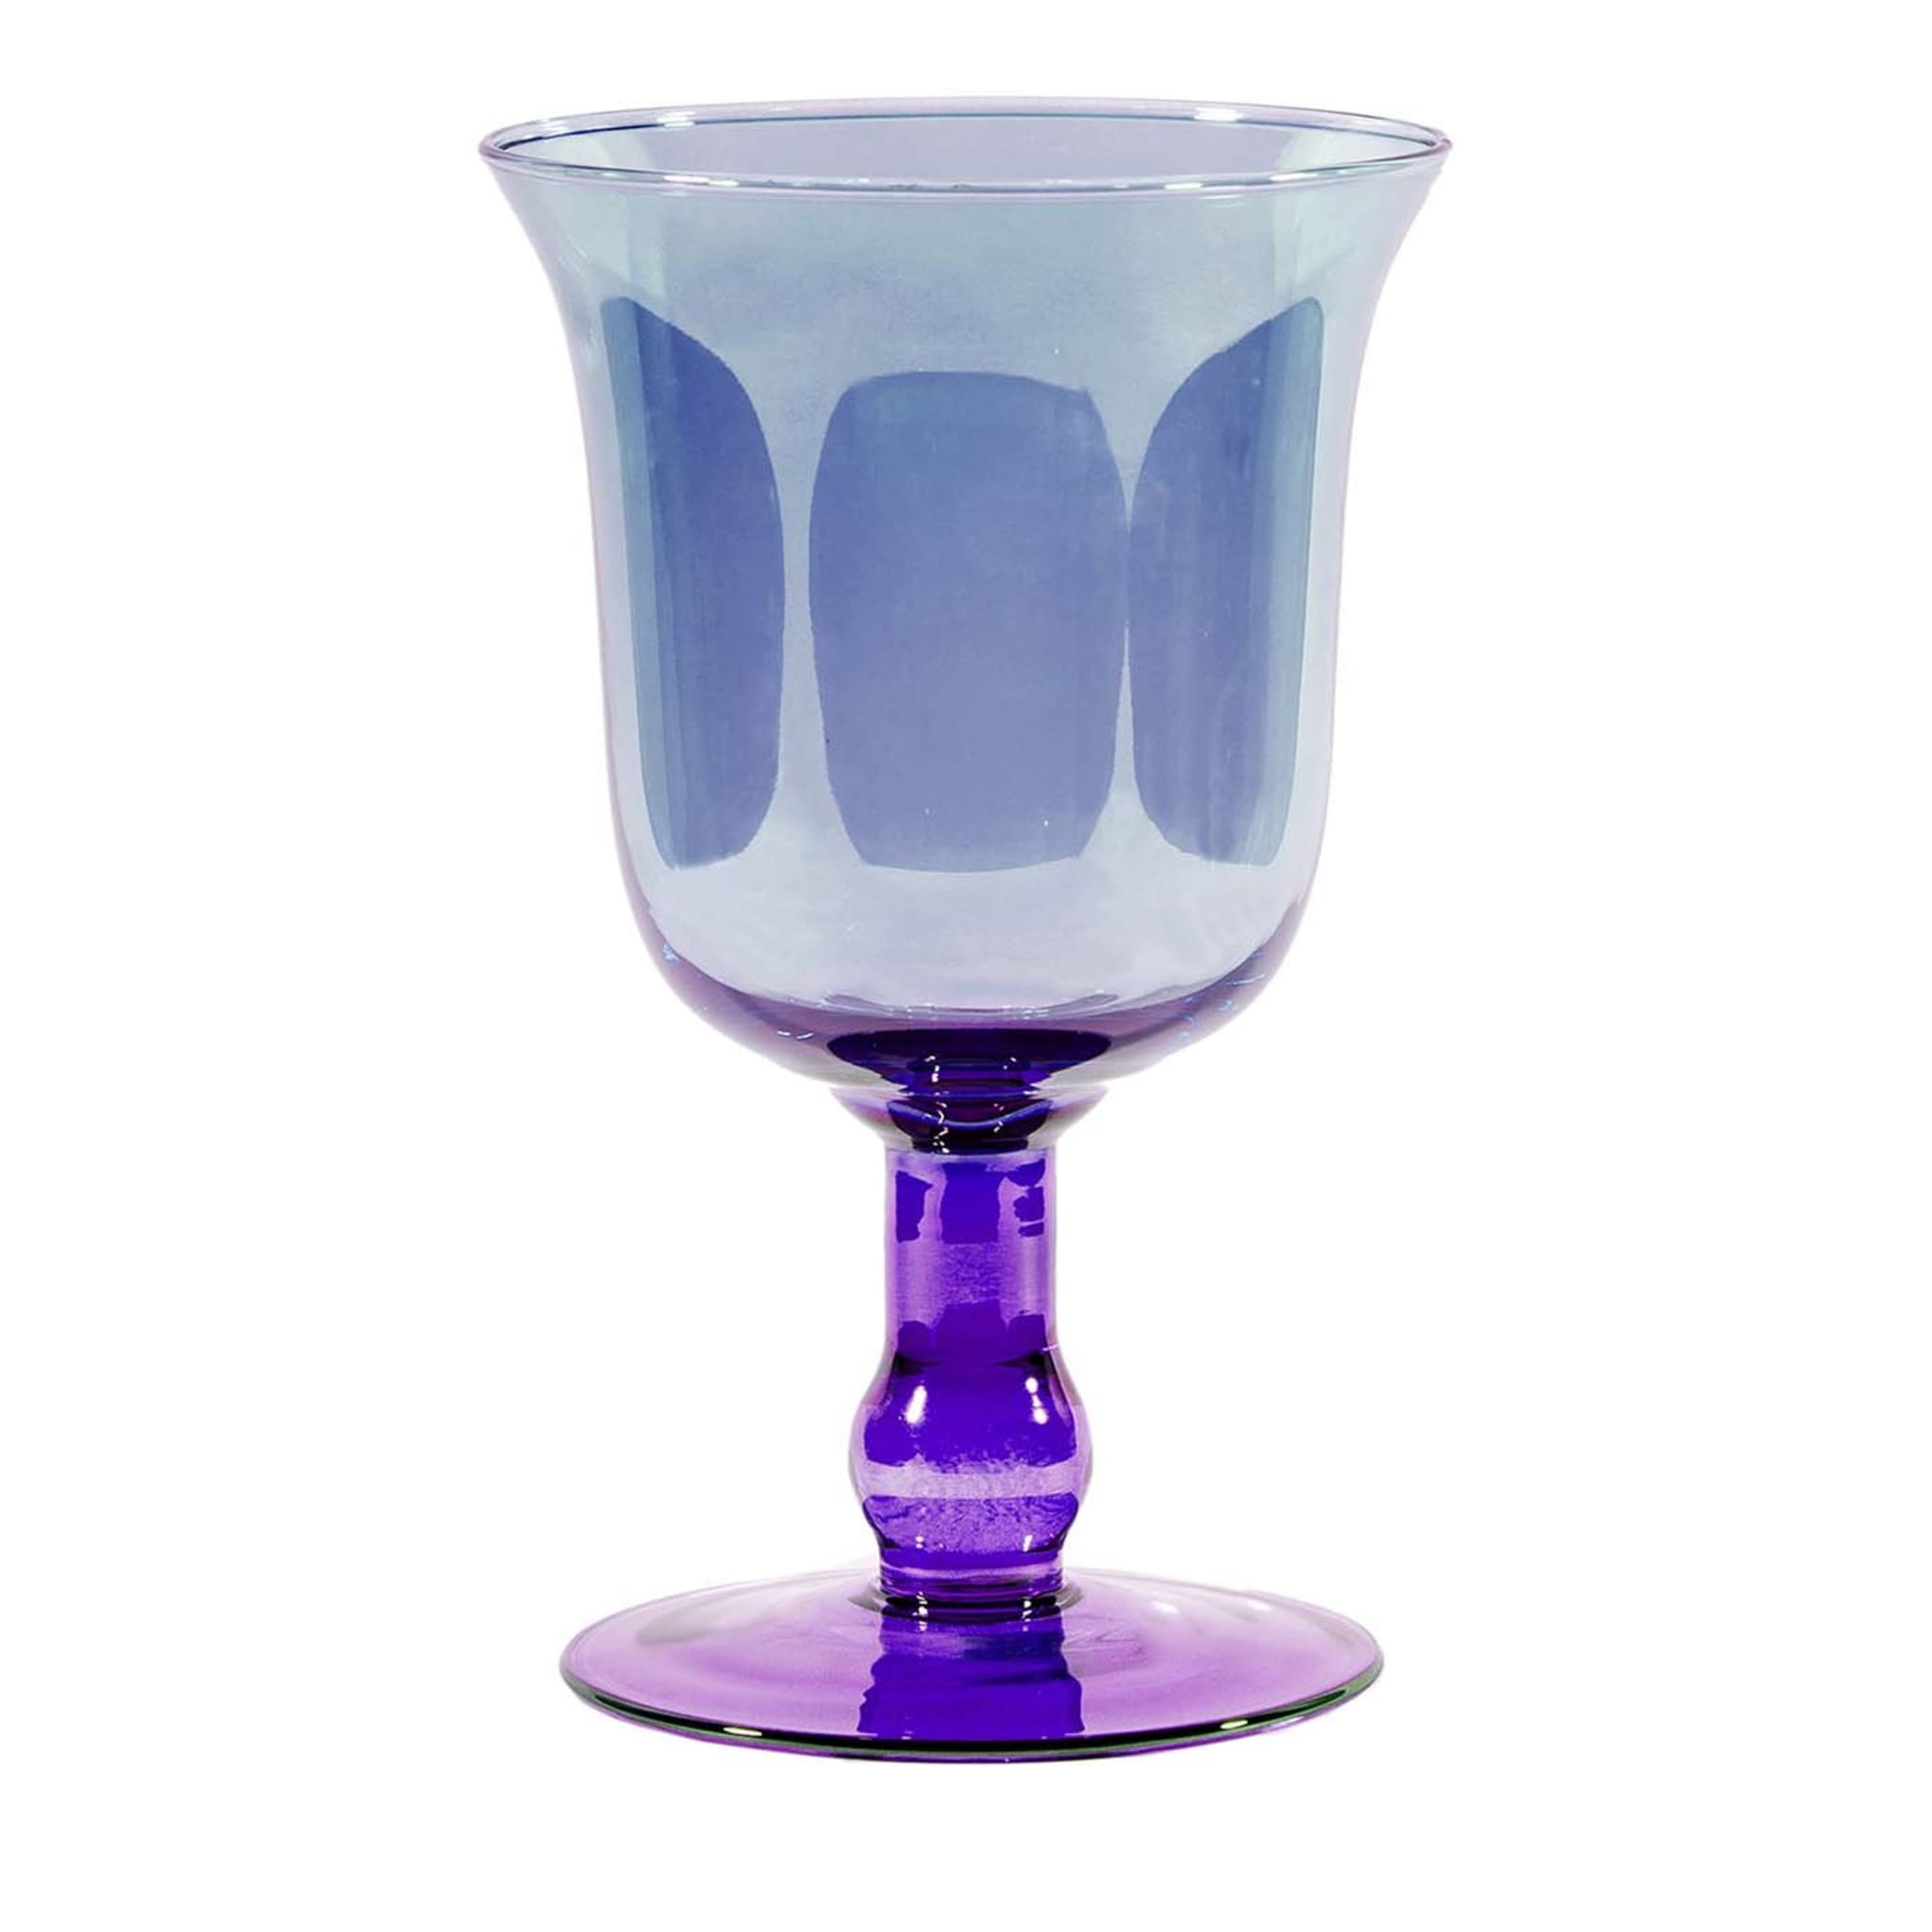 Grand vase en gobelet violet-bleu - Vue principale